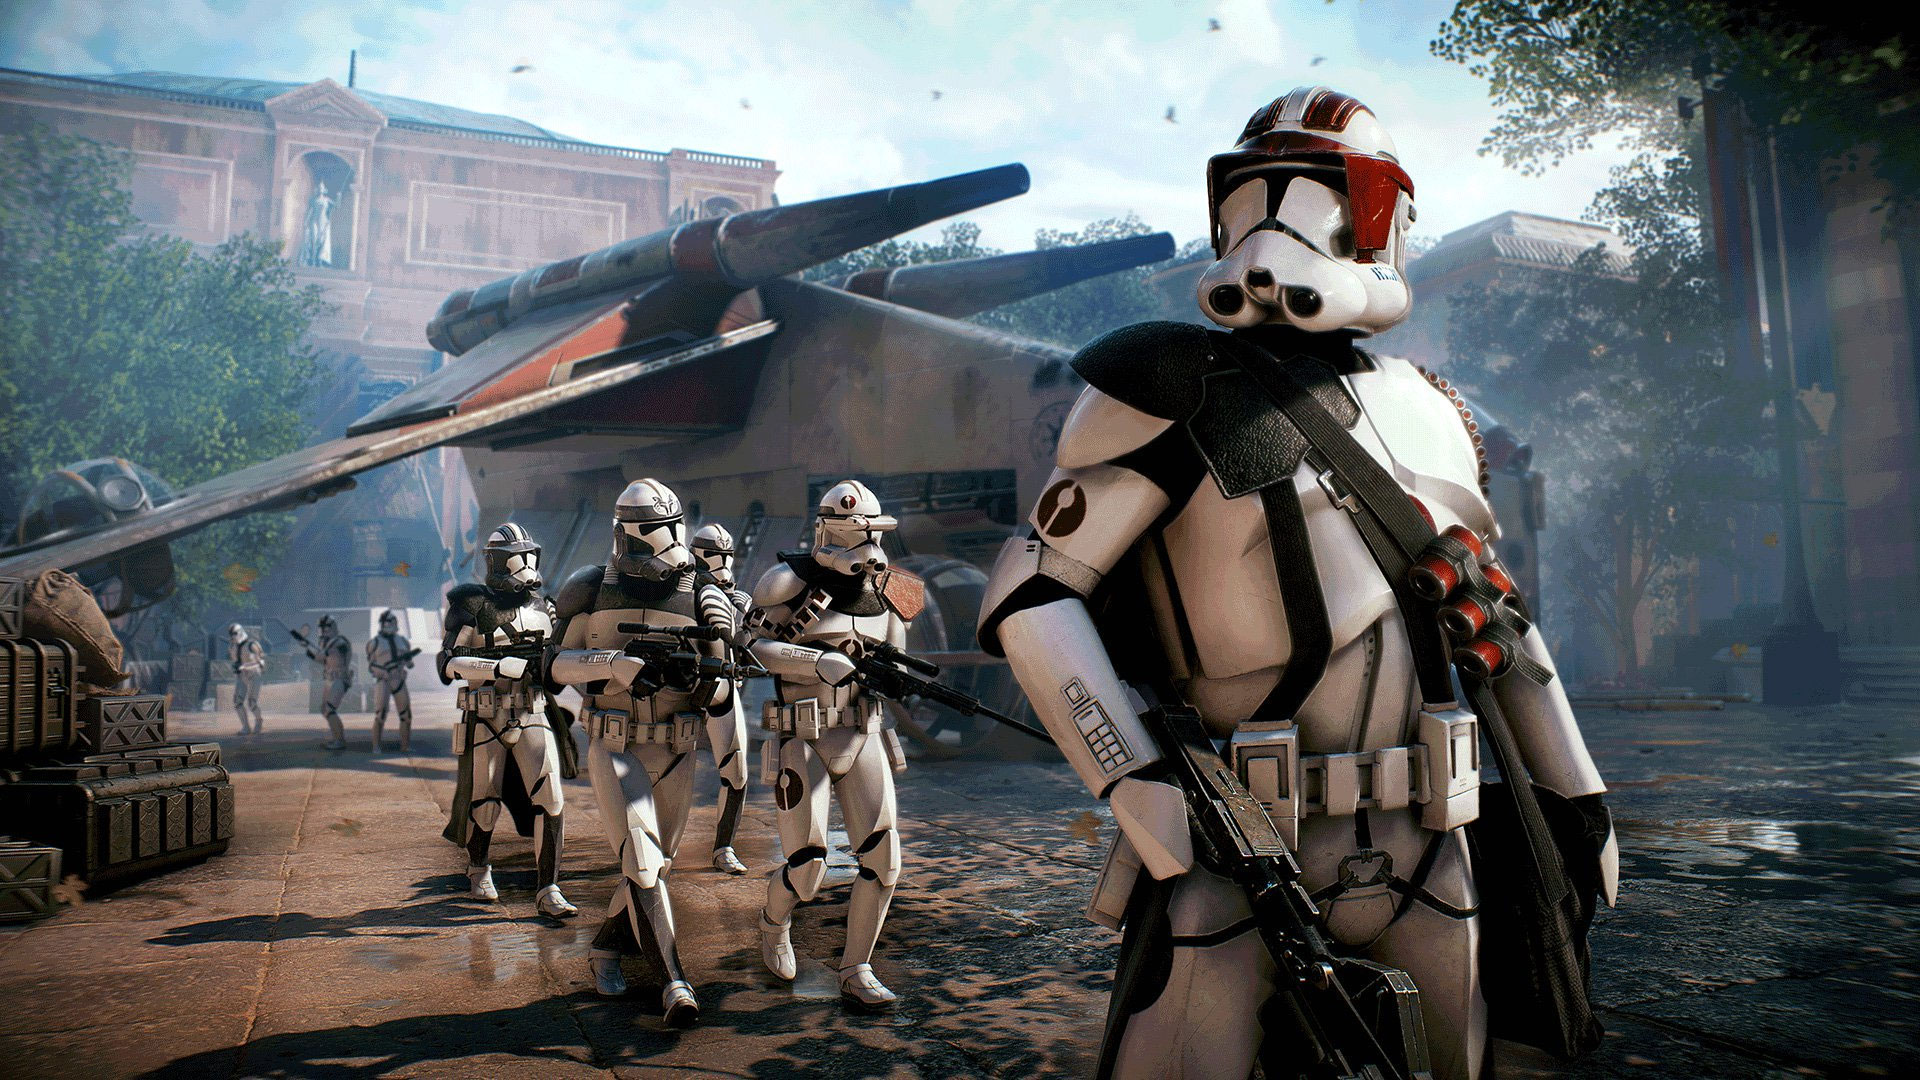 Darmowy egzemplarz Star Wars: Battlefront II, jeśli kupisz pada do PS4 lub Xbox One